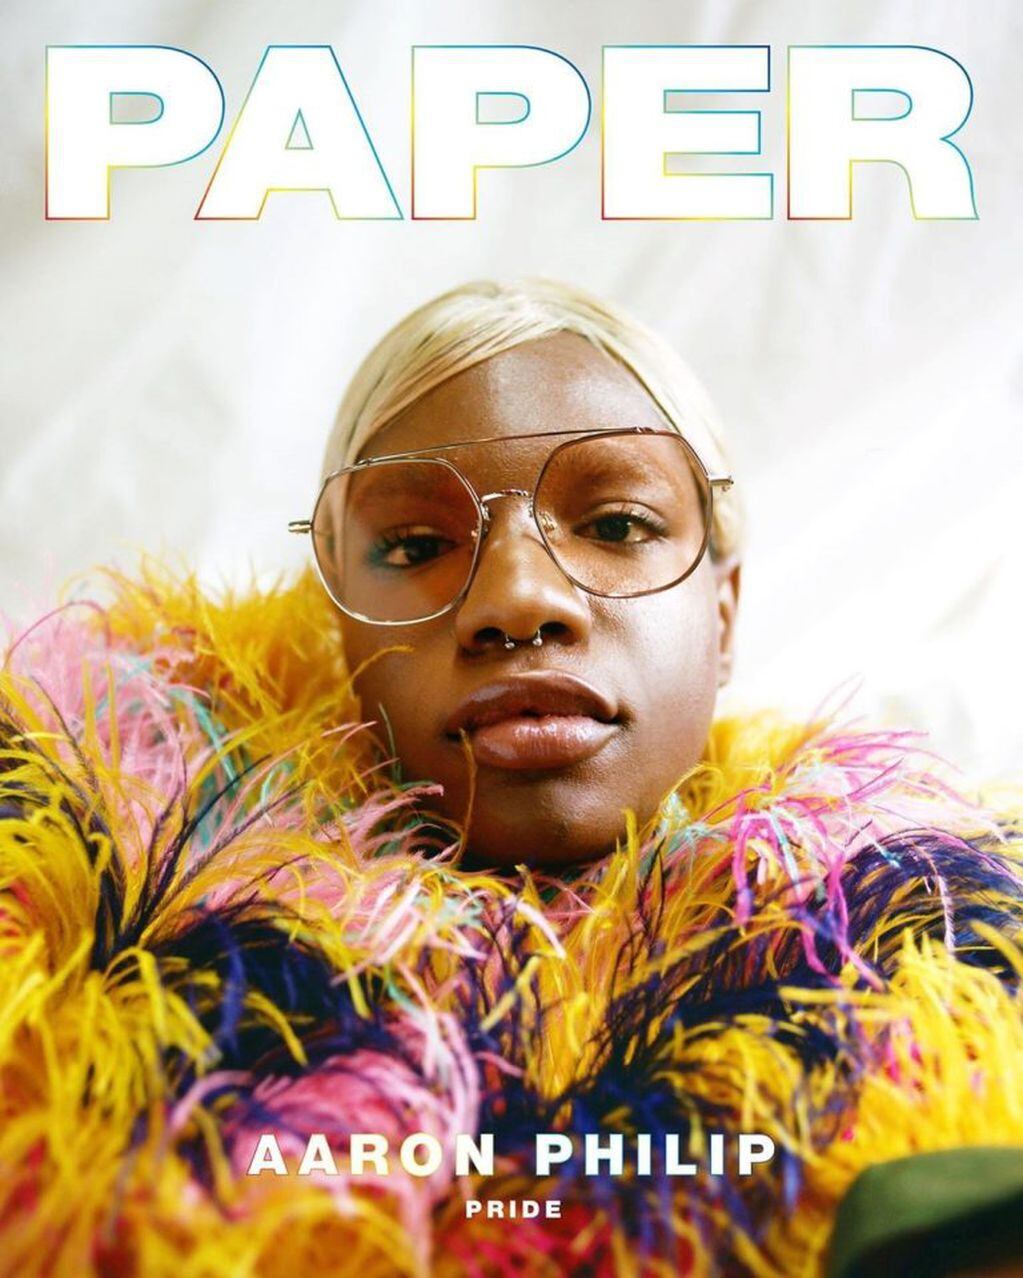 La portada de revista Paper, con Aaron Philip como protagonista (Foto: Myles Loftin Photography)